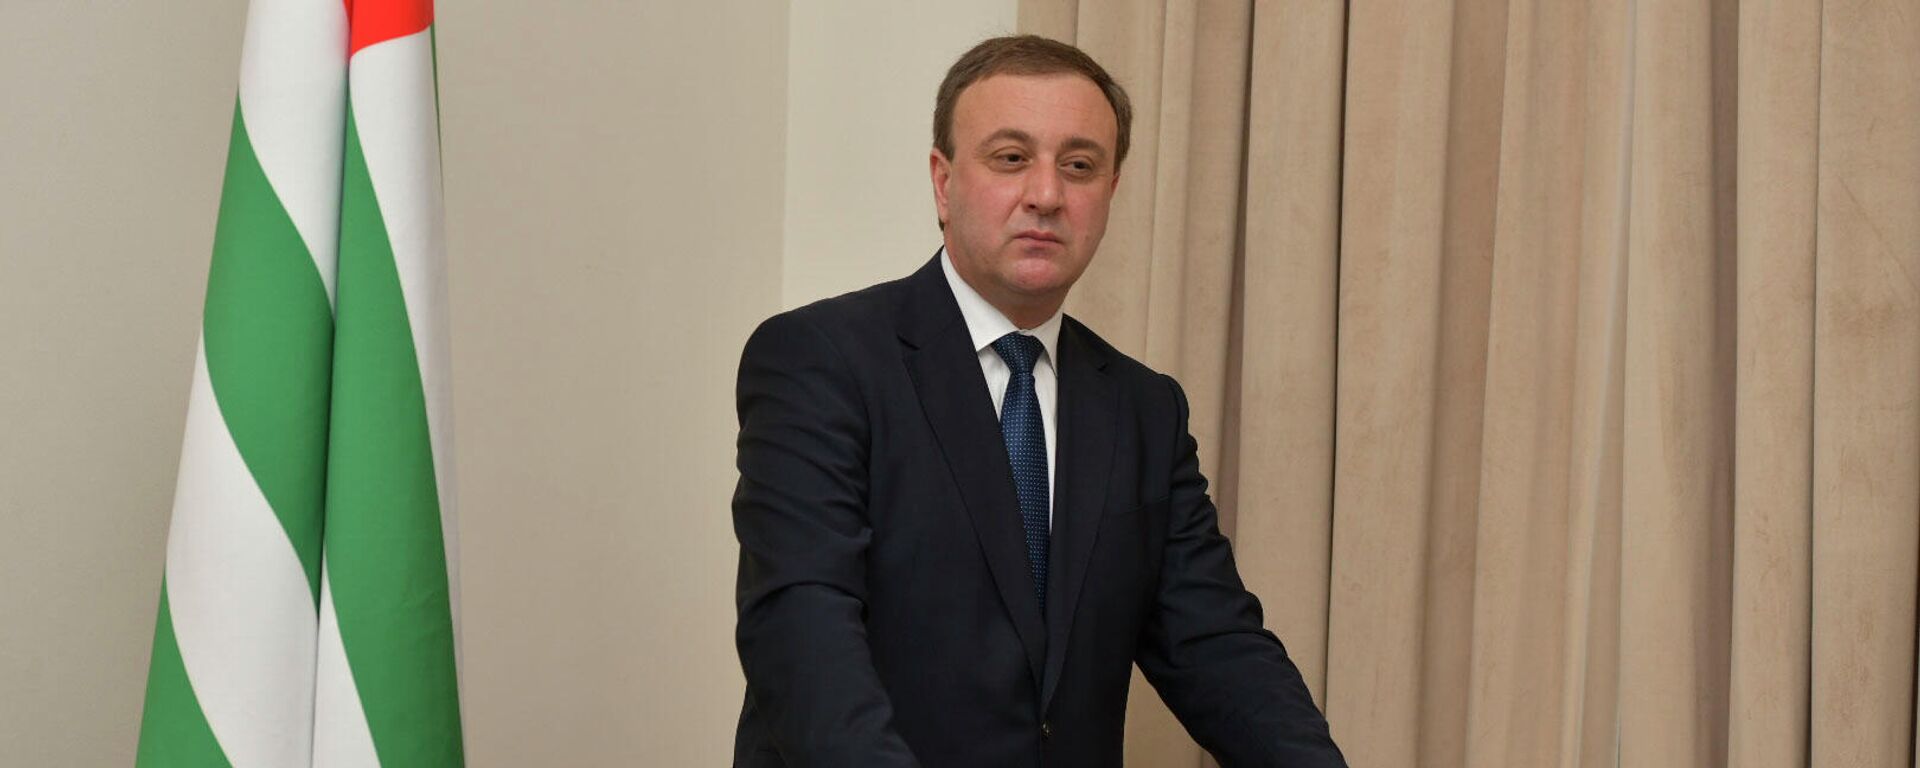 Правительство Абхазии утвердило проект республиканского бюджета на 2022 год - Sputnik Аҧсны, 1920, 30.11.2021